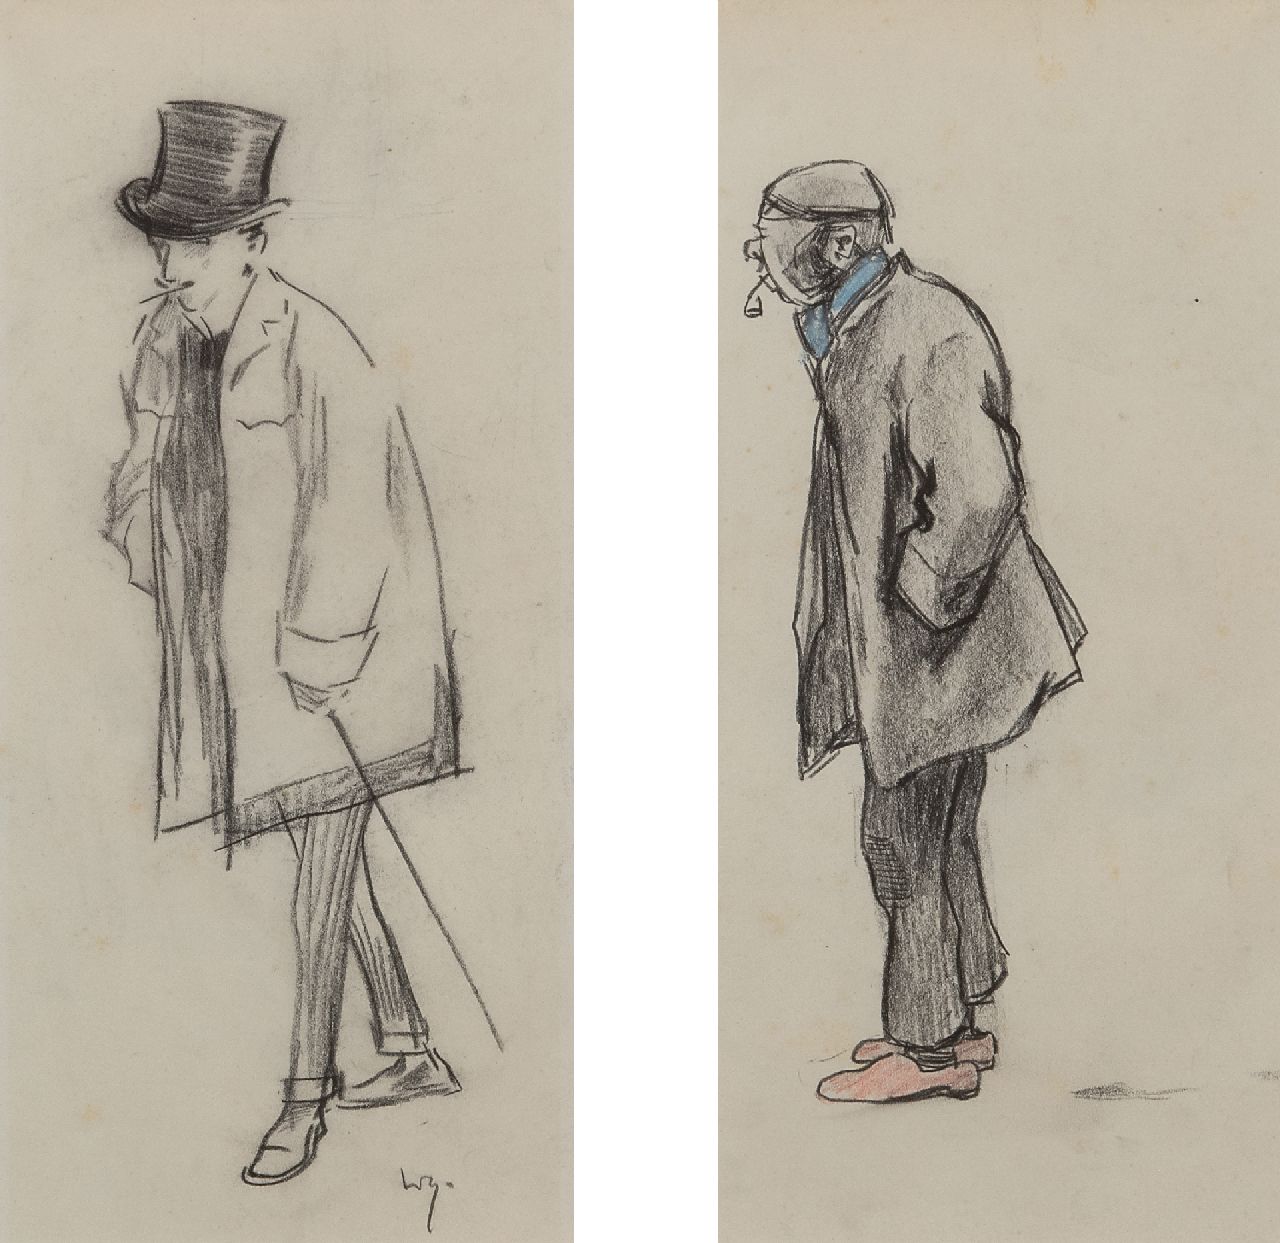 Sluiter J.W.  | Jan Willem 'Willy' Sluiter | Aquarellen en tekeningen te koop aangeboden | Een heer met hoge hoed; een werkman met pijp, potlood en kleurpotlood op papier 29,5 x 30,0 cm, gesigneerd linksonder